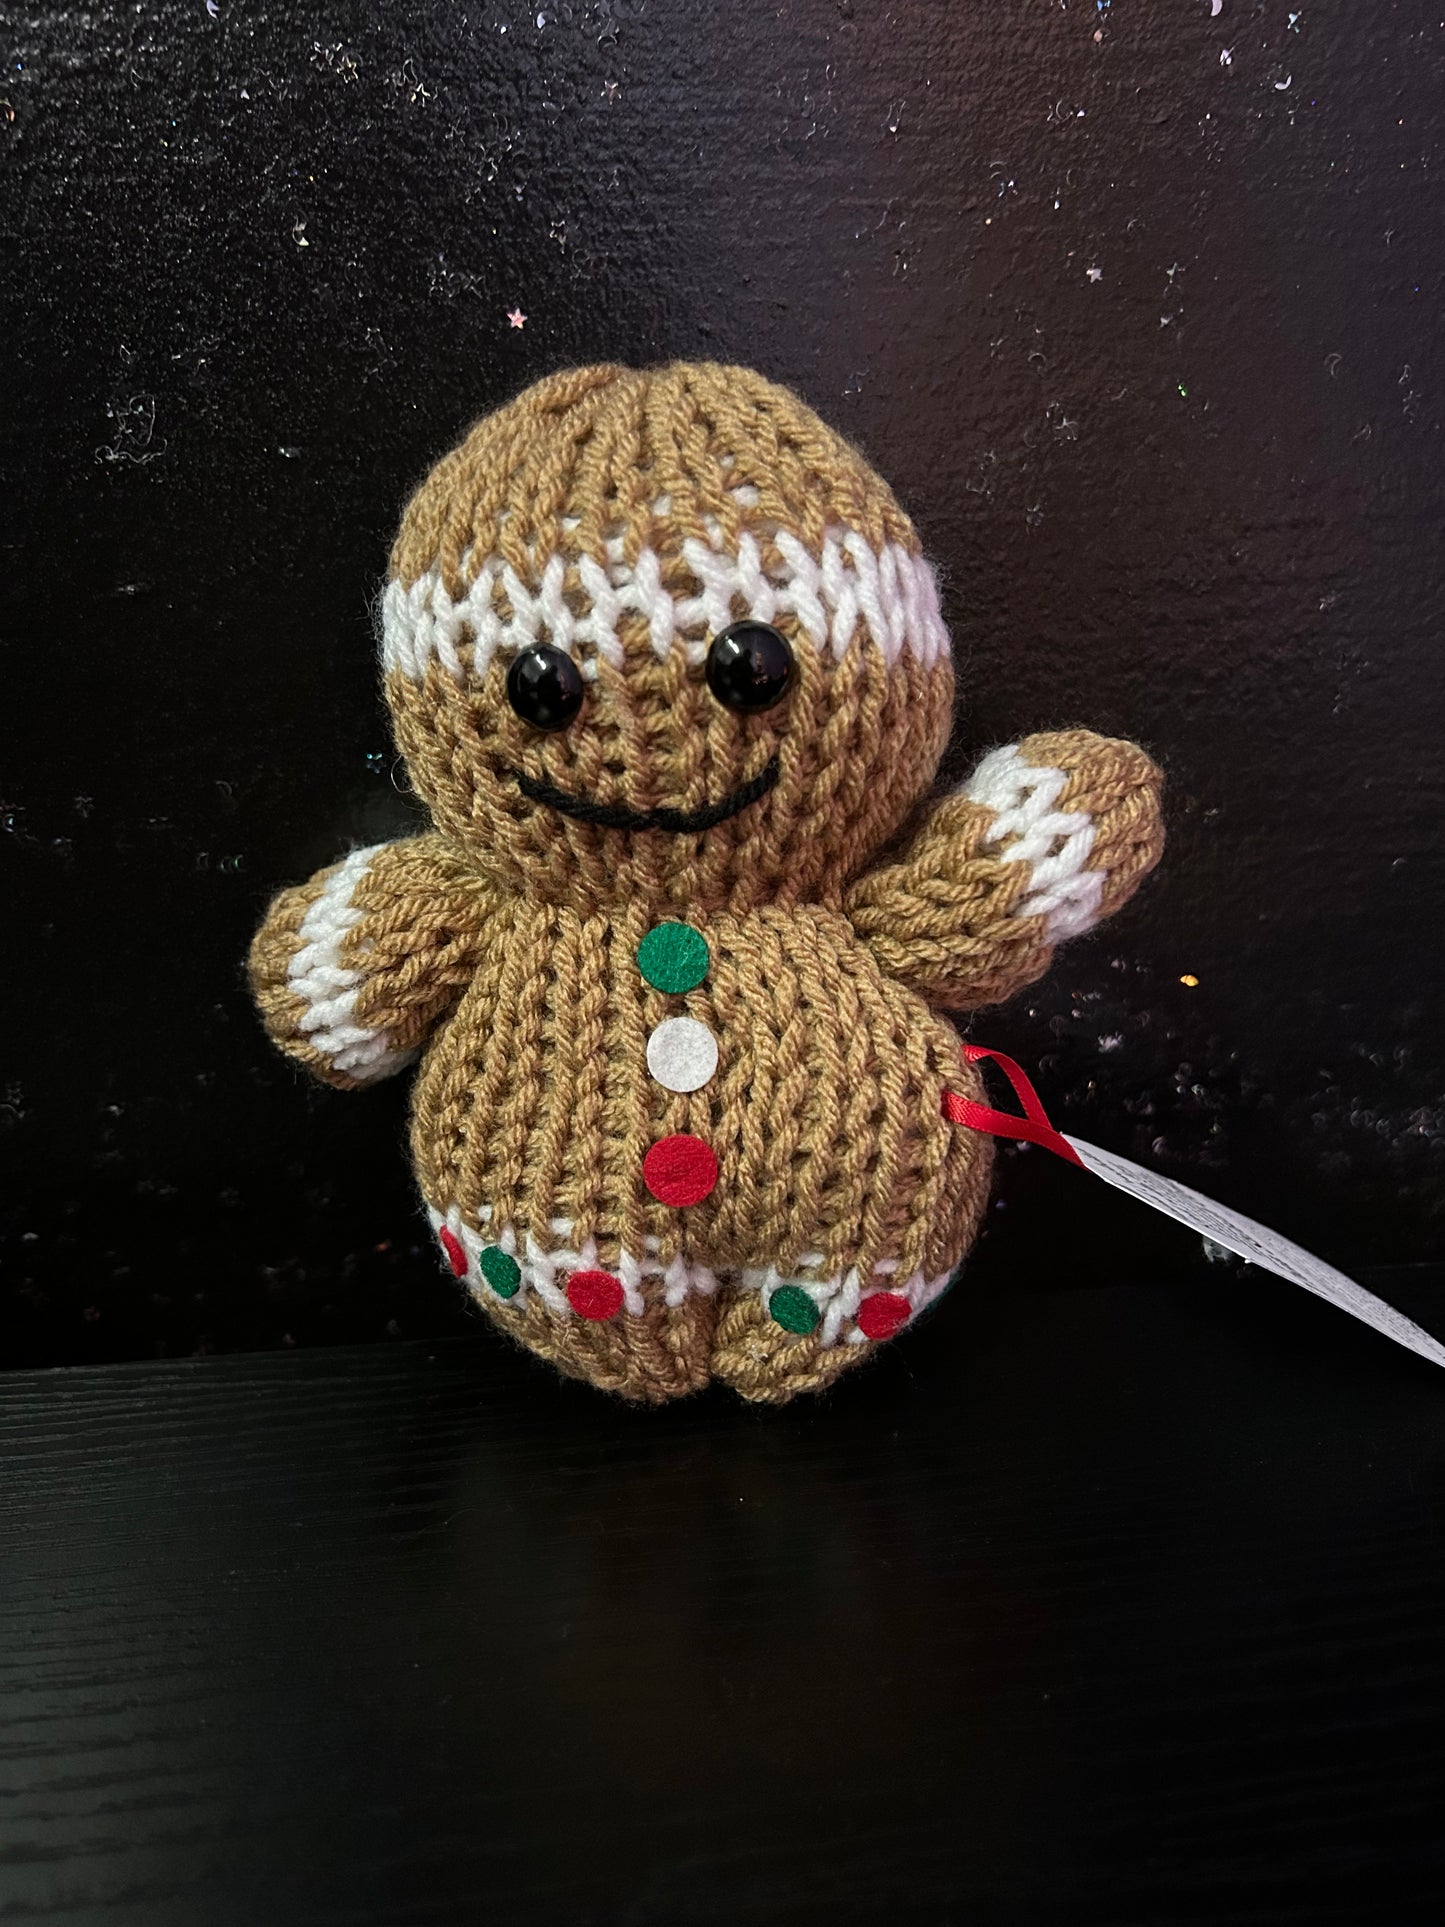 Crocheted Stuffed Animal